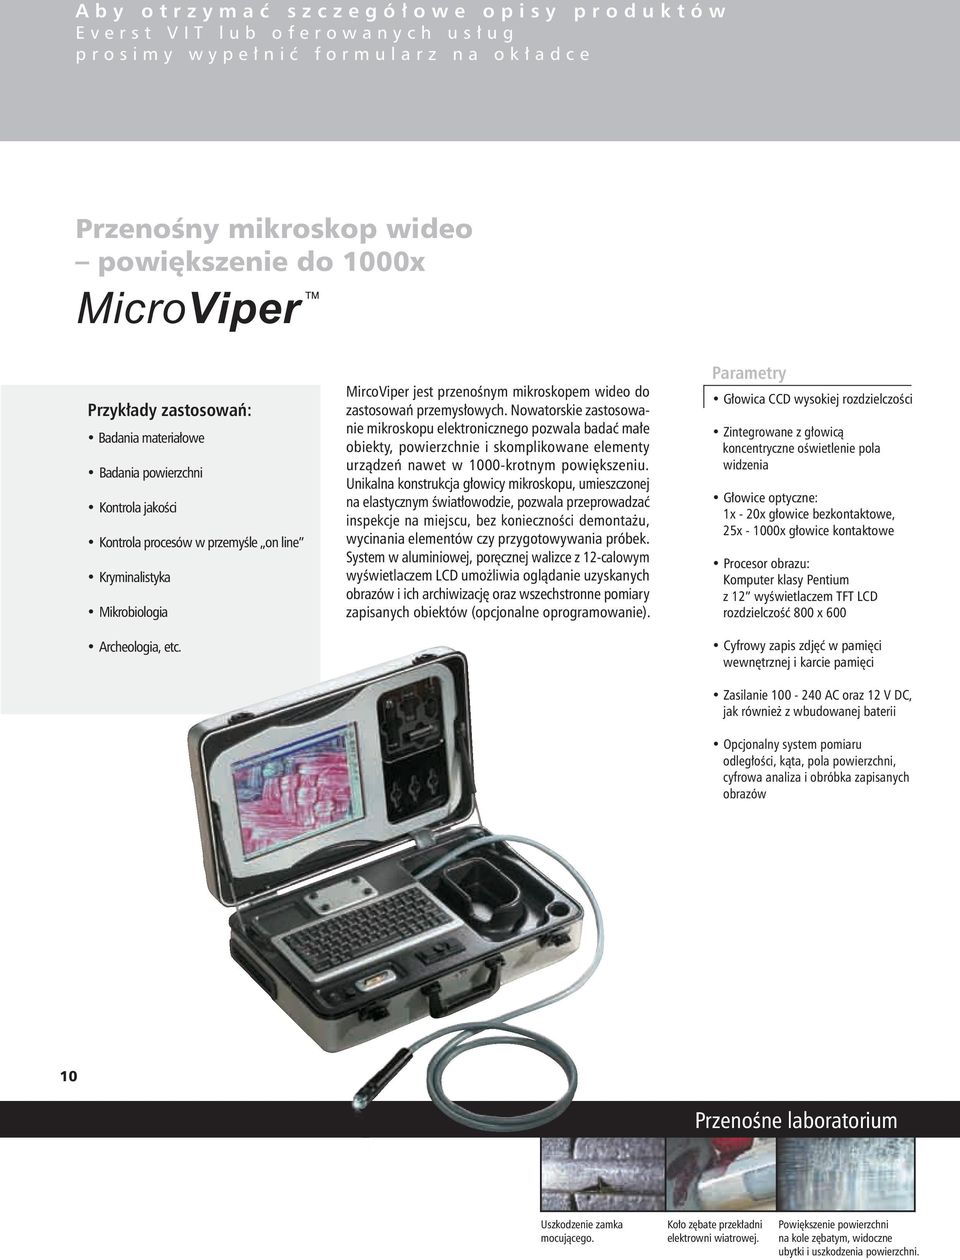 Mikrobiologia Archeologia, etc. MircoViper jest przenośnym mikroskopem wideo do zastosowań przemysłowych.